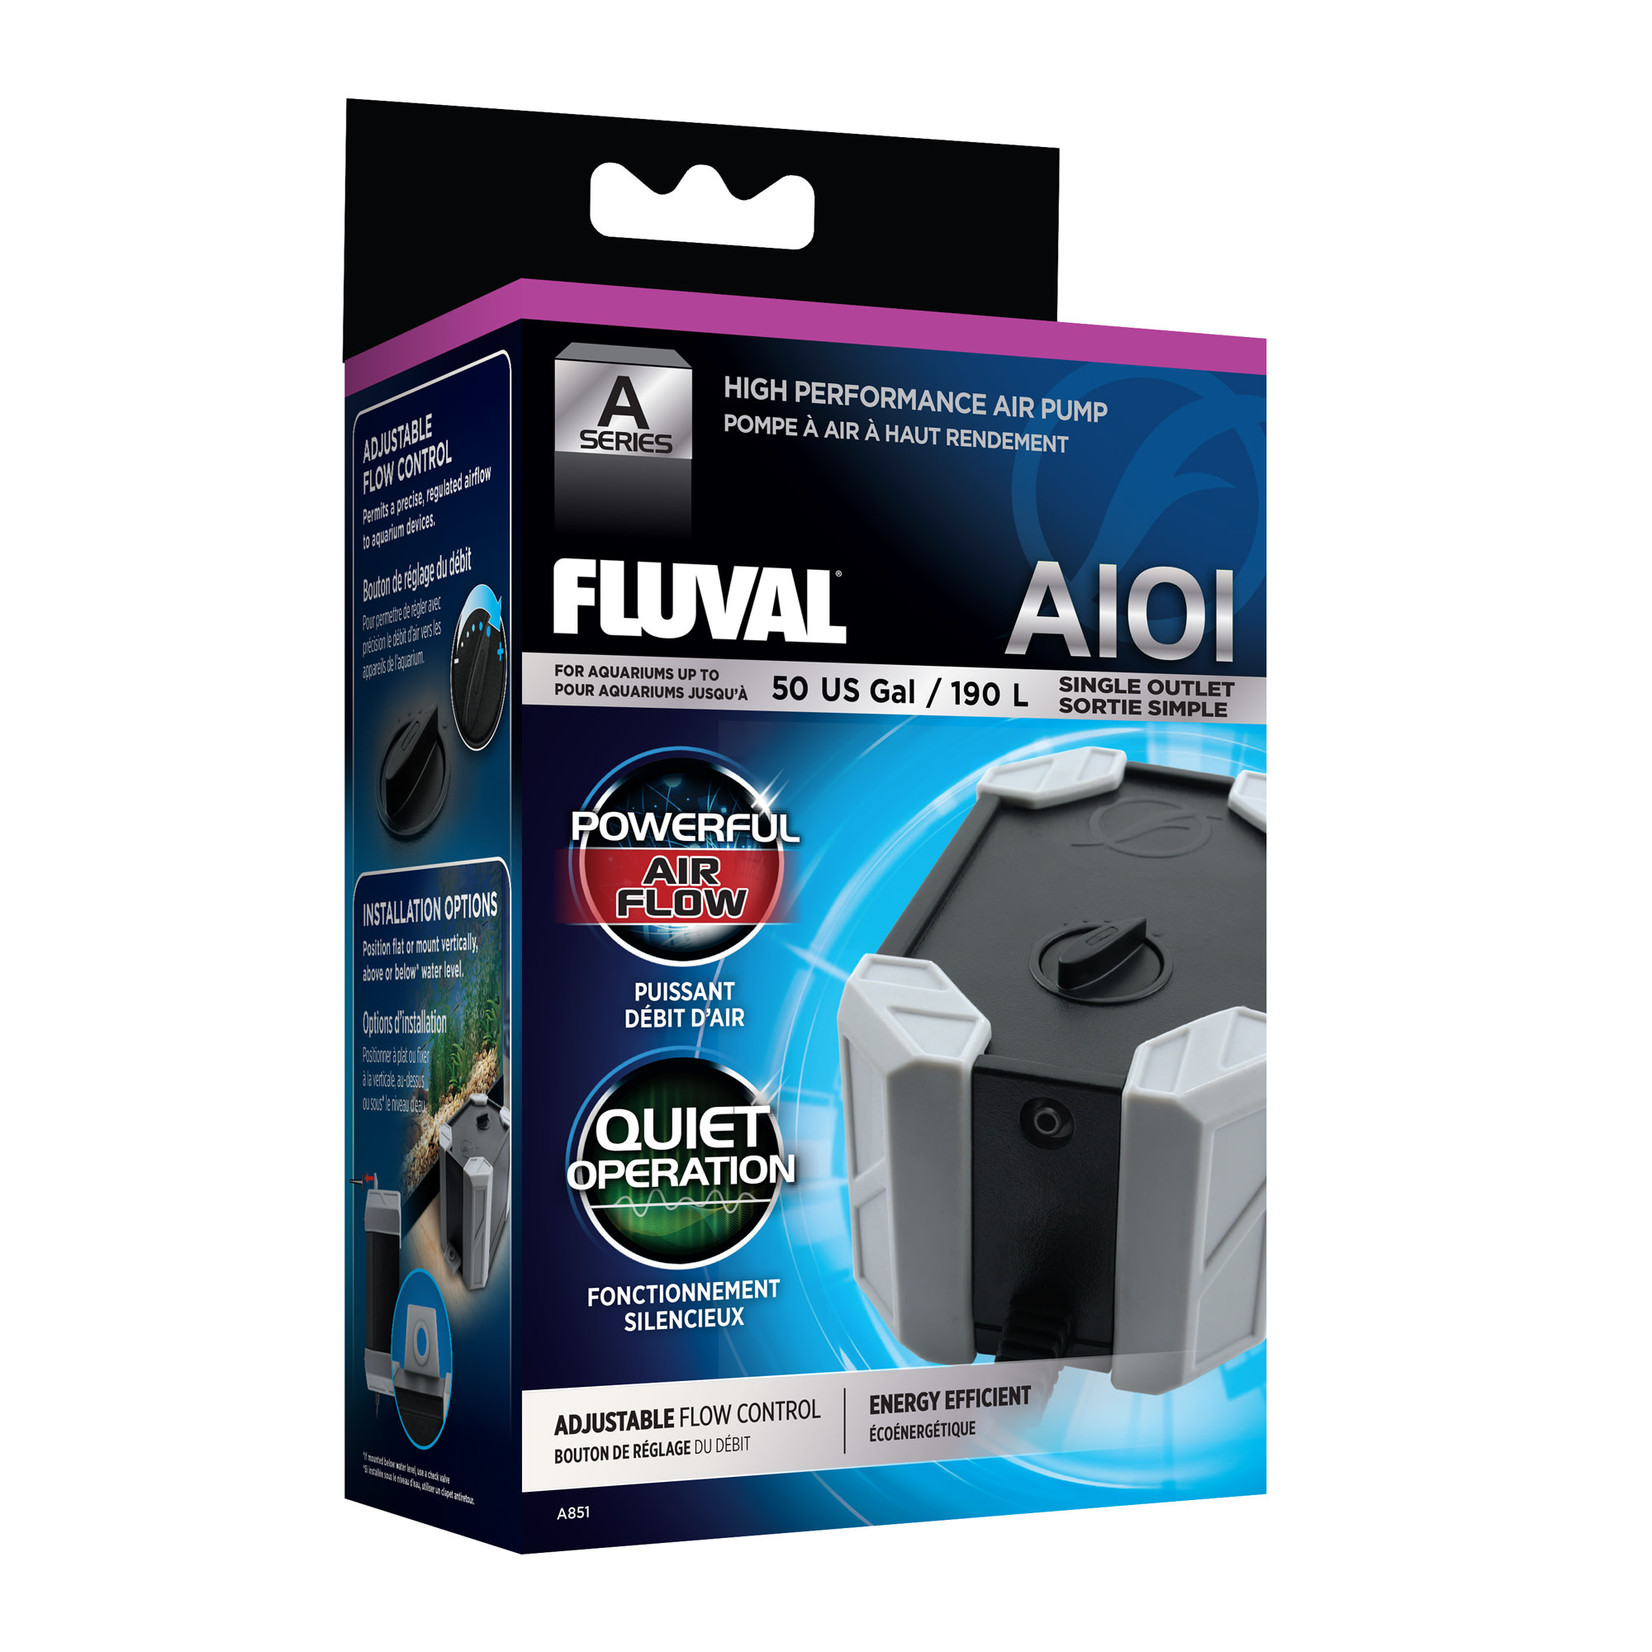 FLUVAL Fluval A101 Air Pump